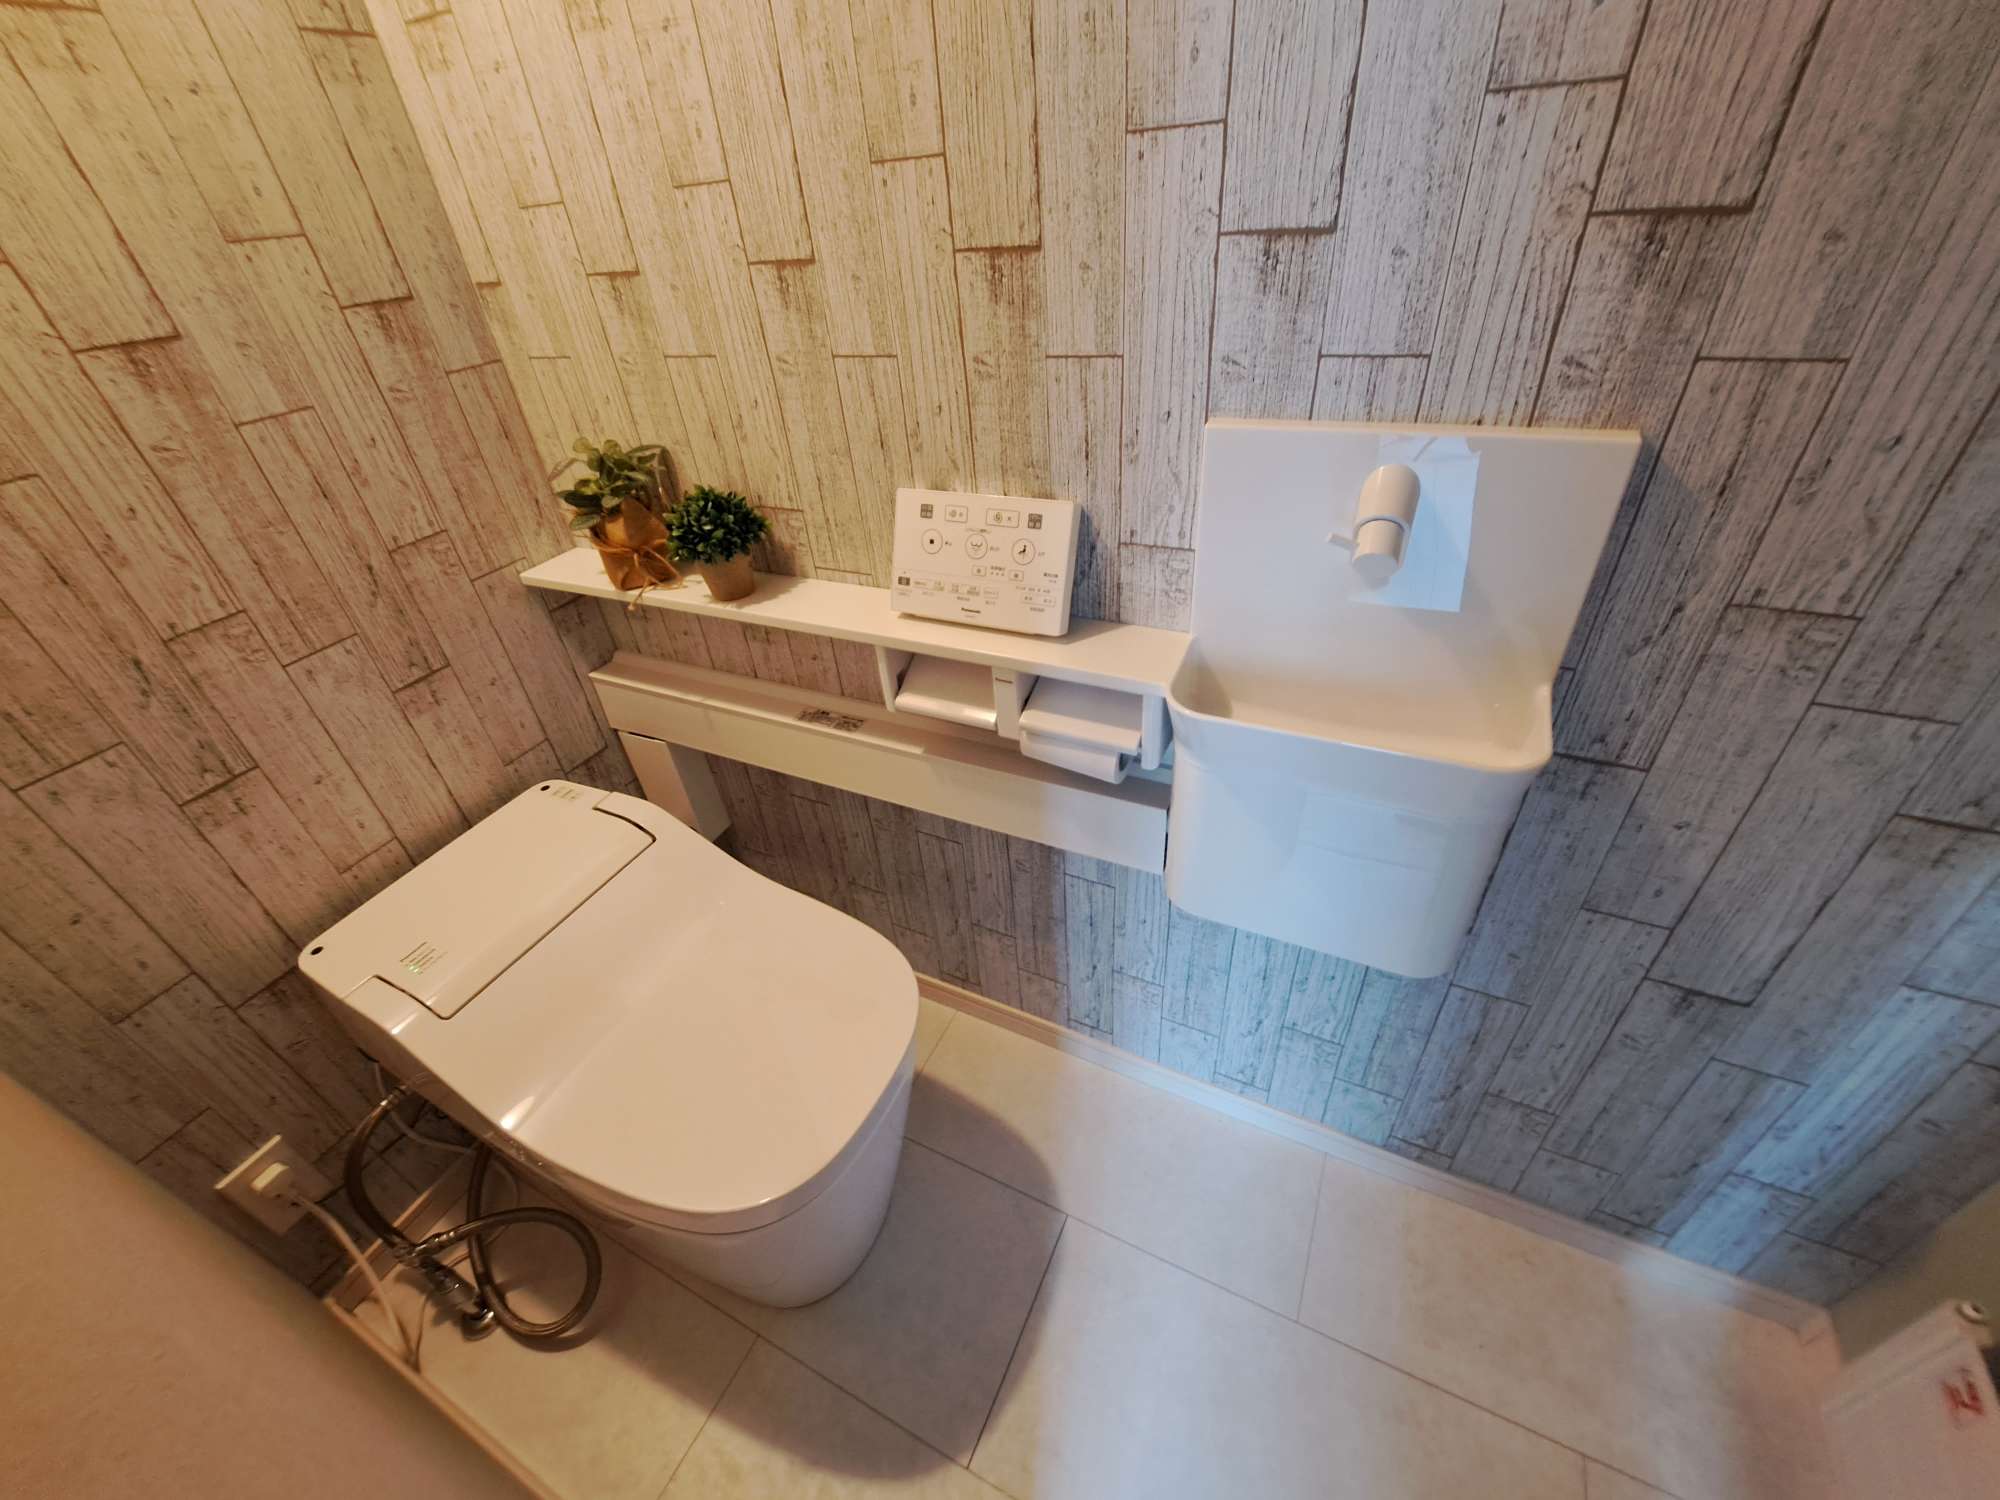 トイレ - タンクレスの洗浄機能付きのトイレ、手洗いカウンターで清潔感は倍増です。 -  - 